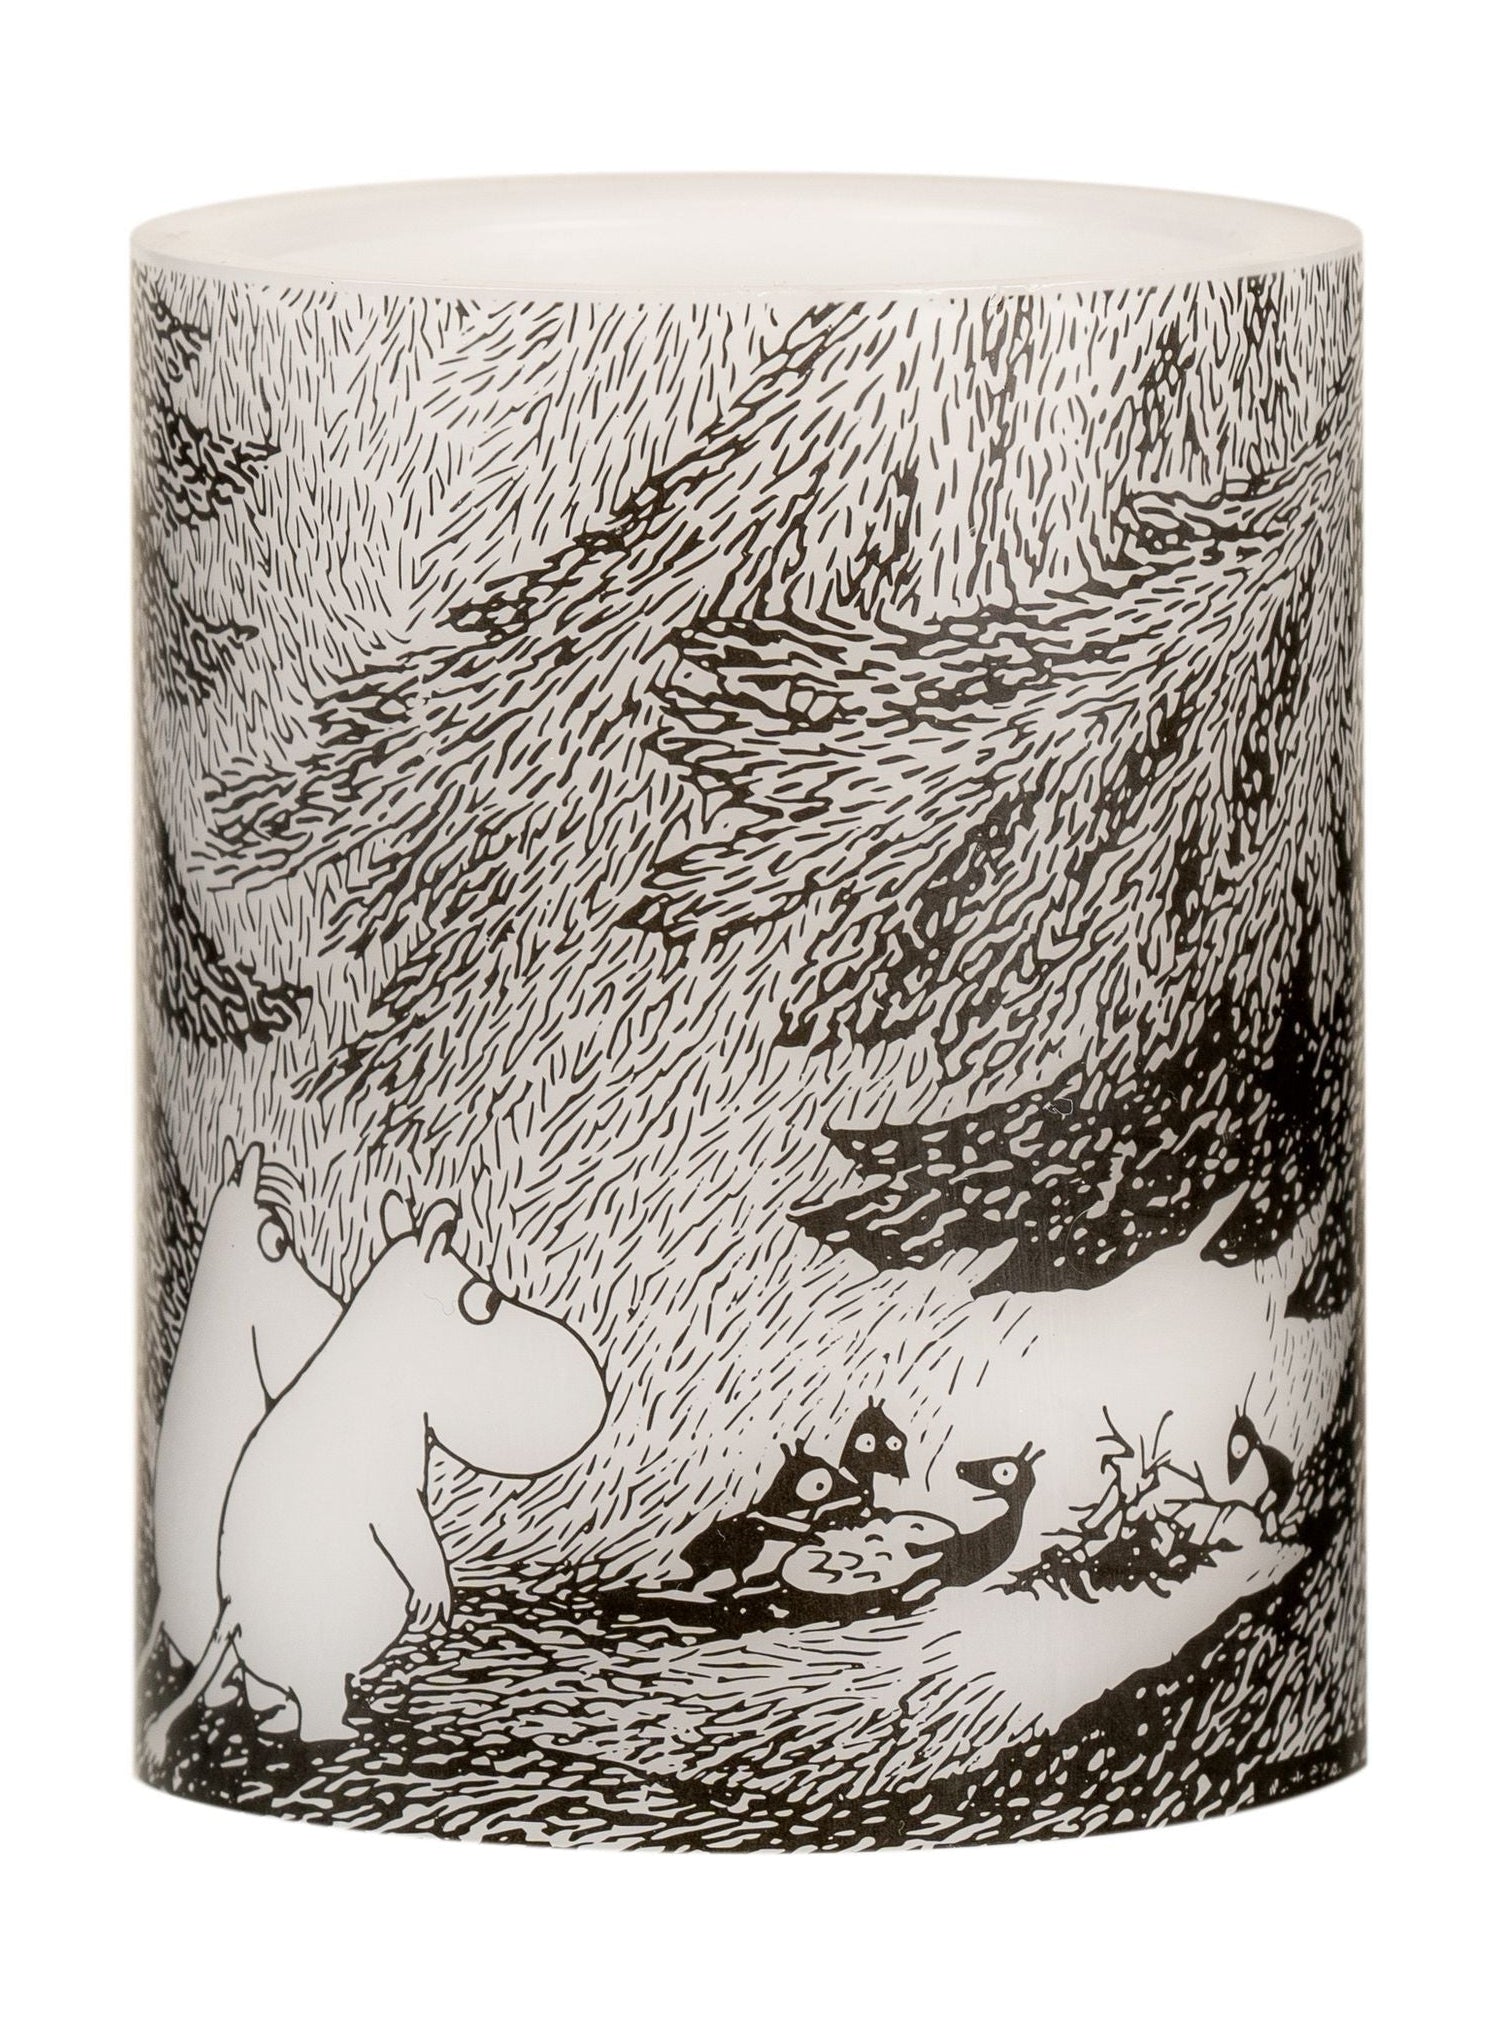 Muurla Moomin Originals ha guidato la candela sotto gli alberi